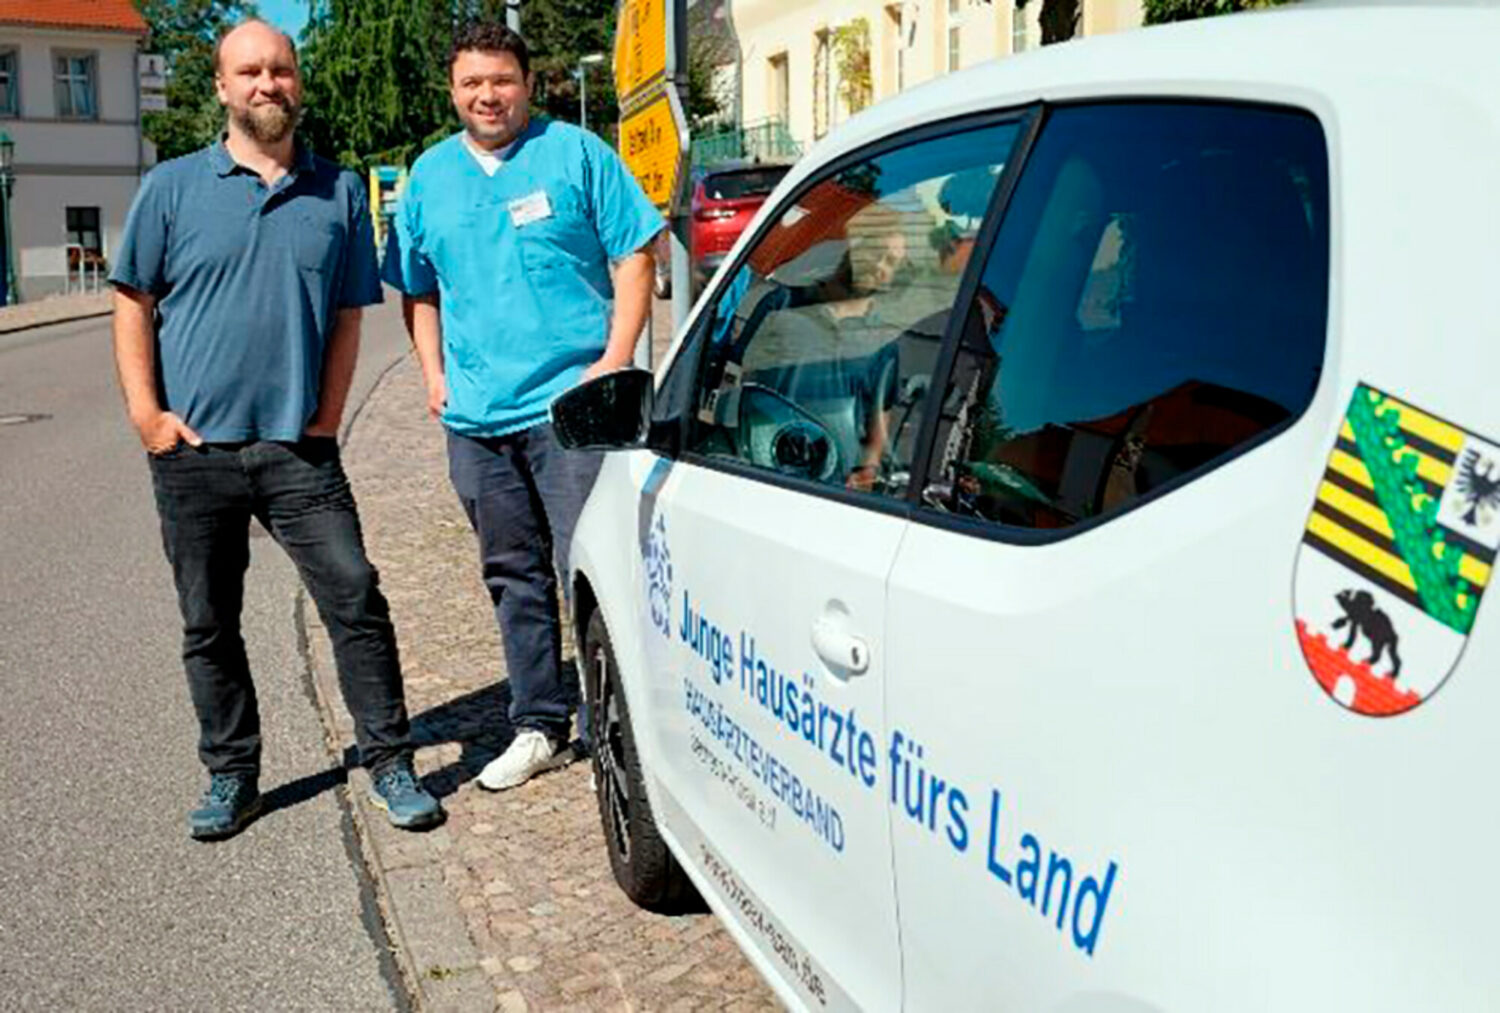 Mit der Initiative "PJ-Mobil – Junge Hausärzte fürs Land" will der Hausärzteverband Sachsen-Anhalt Studierende für ein PJ in einer Hausarztpraxis im ländlichen Raum begeistern. Dafür werden Fahrzeuge gestellt, die Studierende während der gesamten Zeit für den Weg zur Landarztpraxis nutzen können.